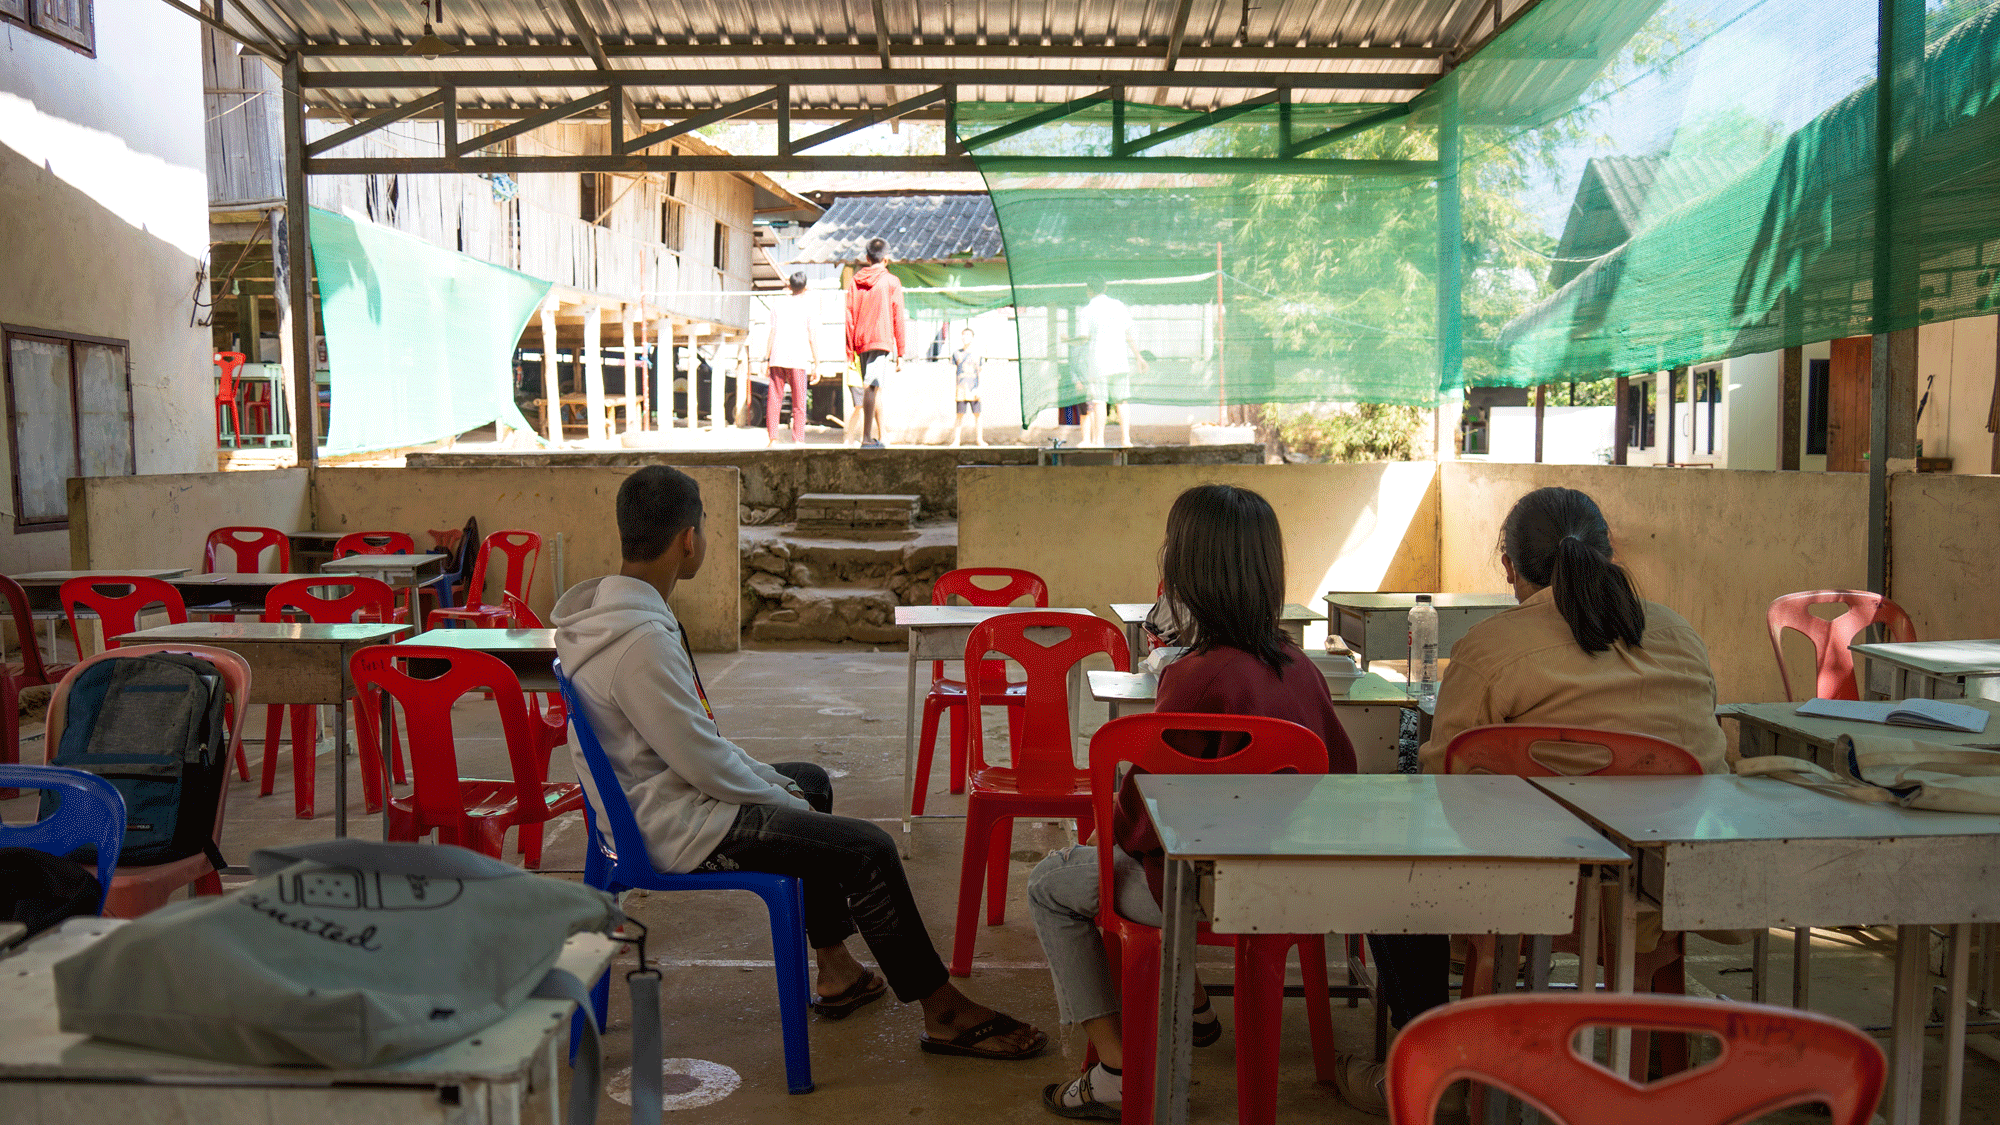 受験者全員が「米国GED試験」に合格するミャンマー移民学校の「驚くべき教育方針」 | 大切なのは「生徒の幸せ」